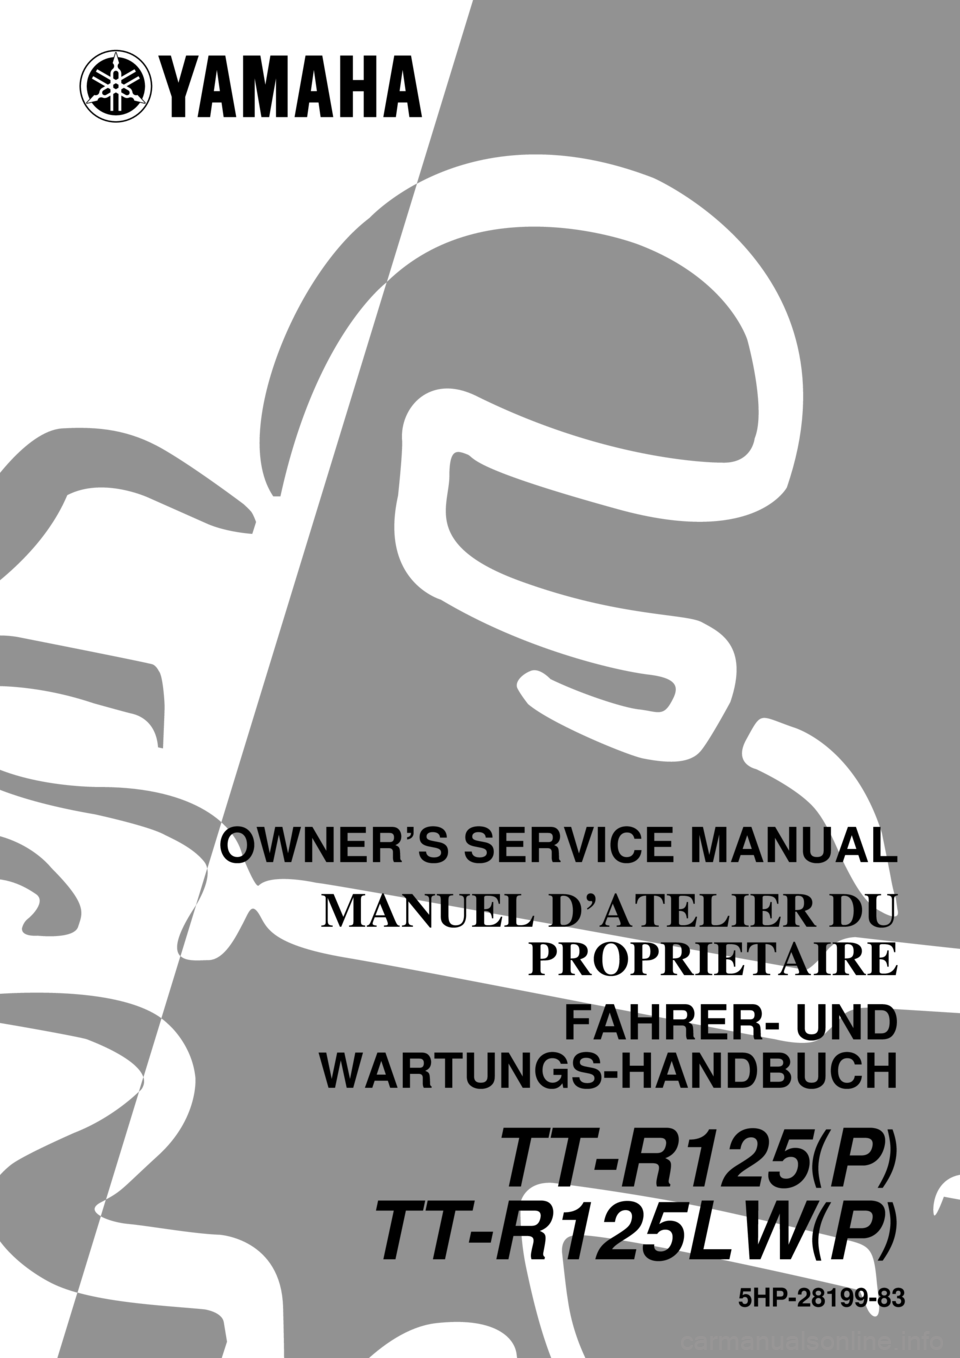 YAMAHA TTR125 2002  Owners Manual 5HP-28199-83
TT-R125(P)
TT-R125LW(P)
OWNER’S SERVICE MANUAL
MANUEL D’ATELIER DU
PROPRIETAIRE
FAHRER- UND
WARTUNGS-HANDBUCH 